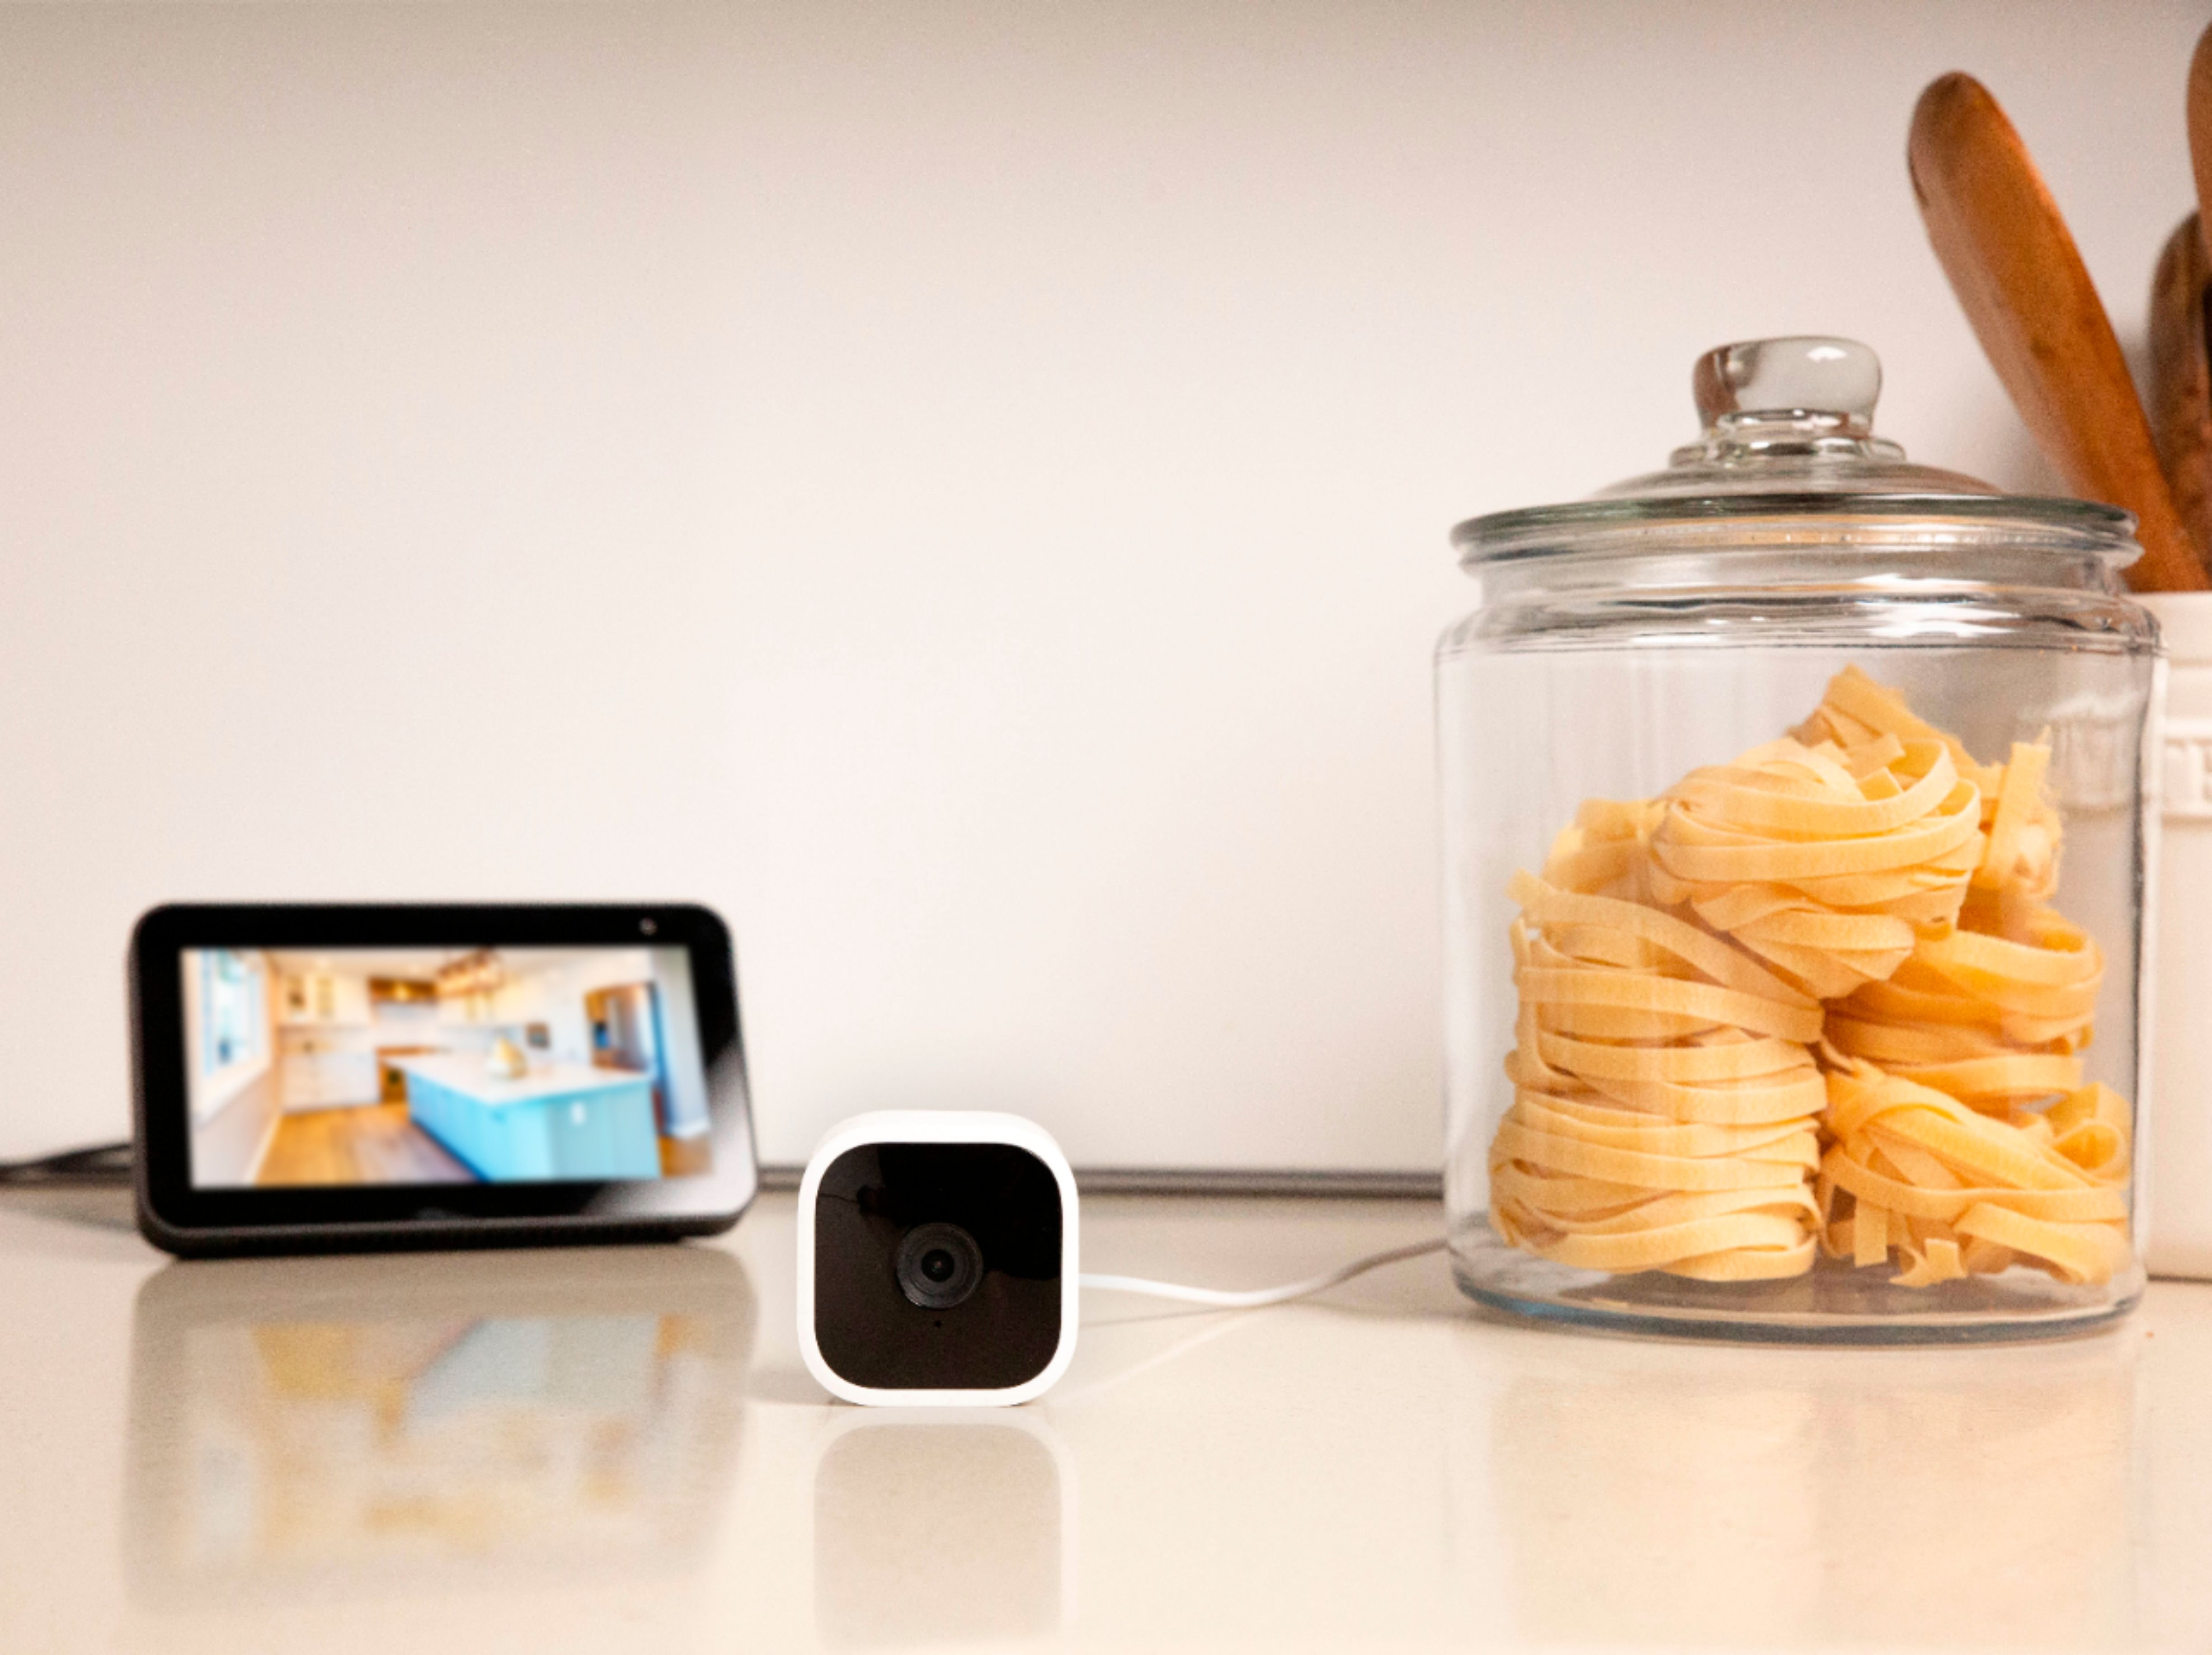 Blink Indoor – wireless, HD security camera